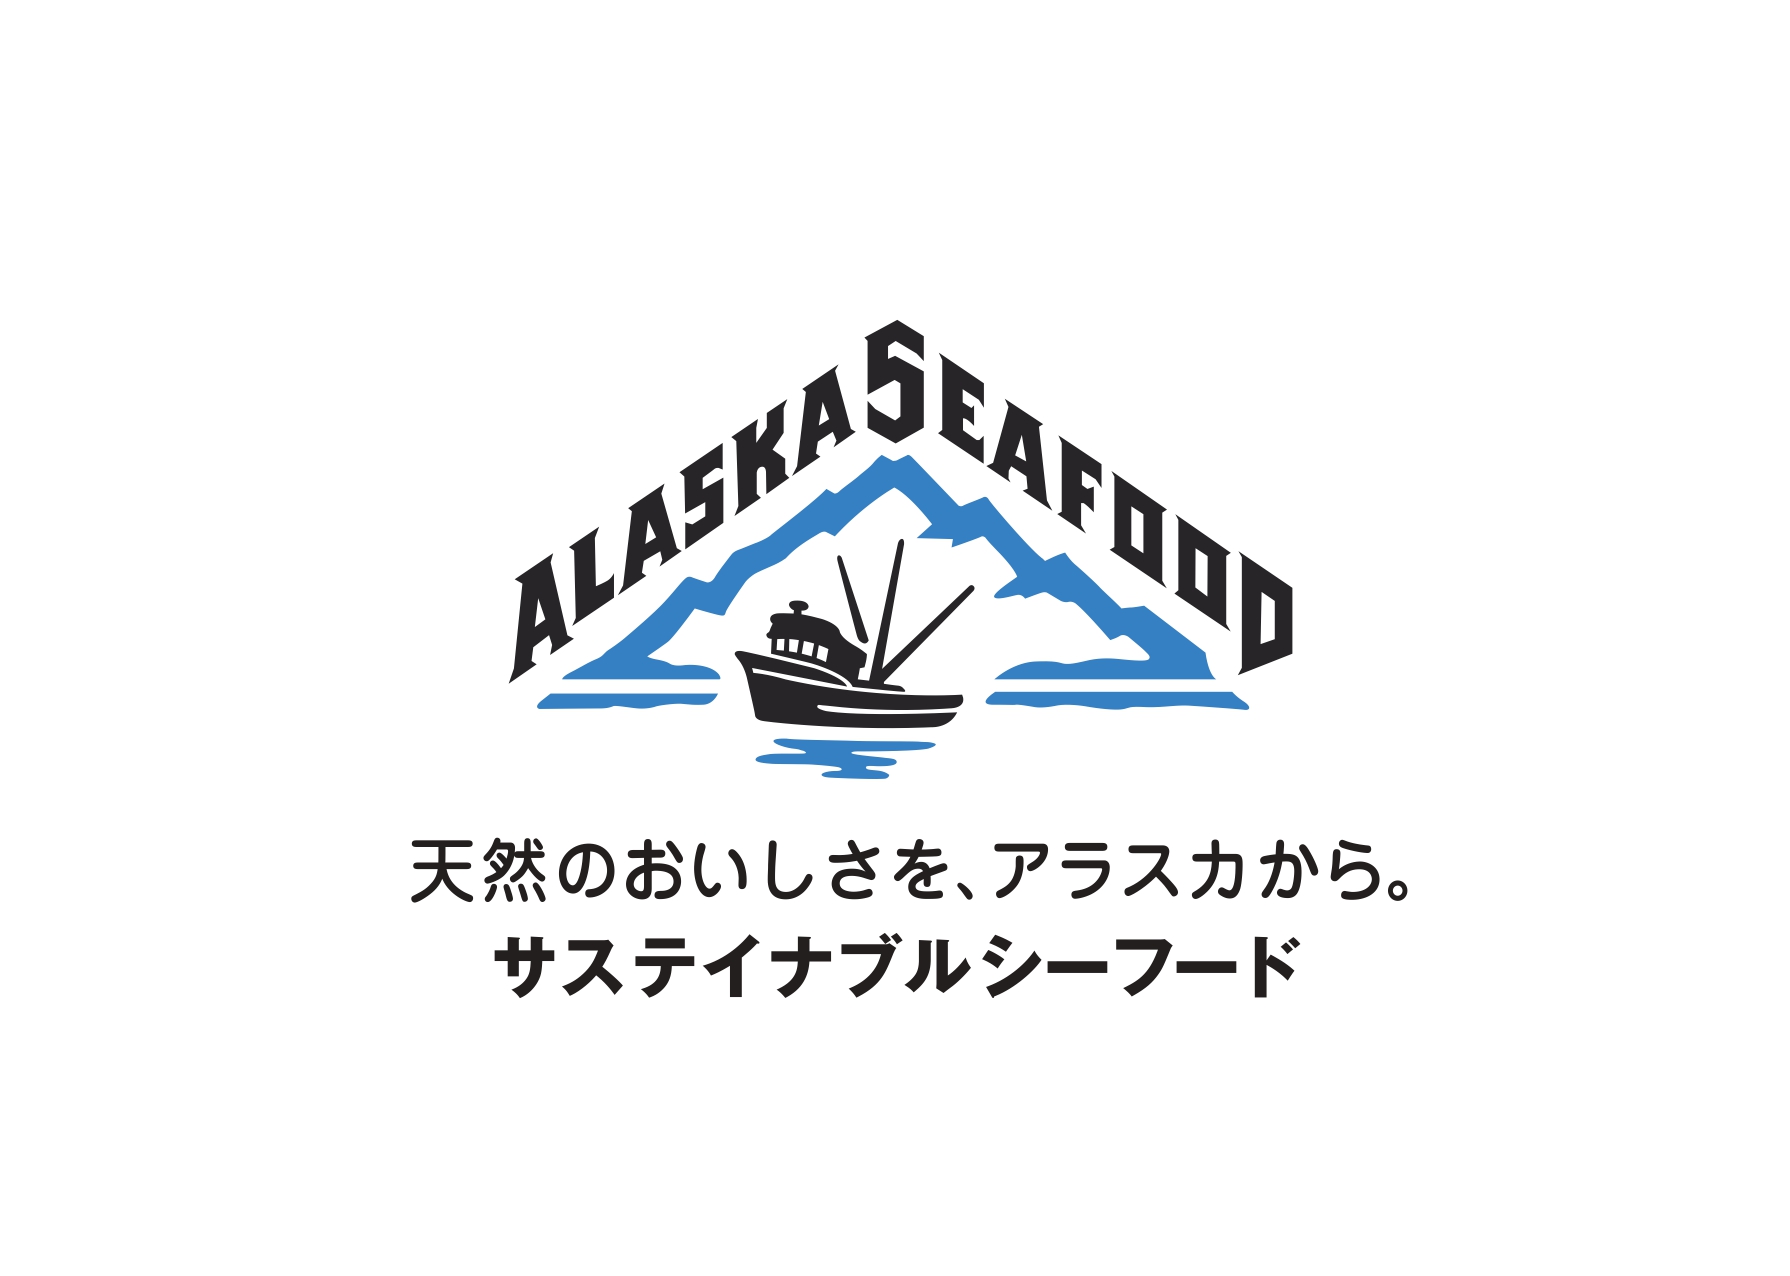 アラスカシーフードマーケティング協会